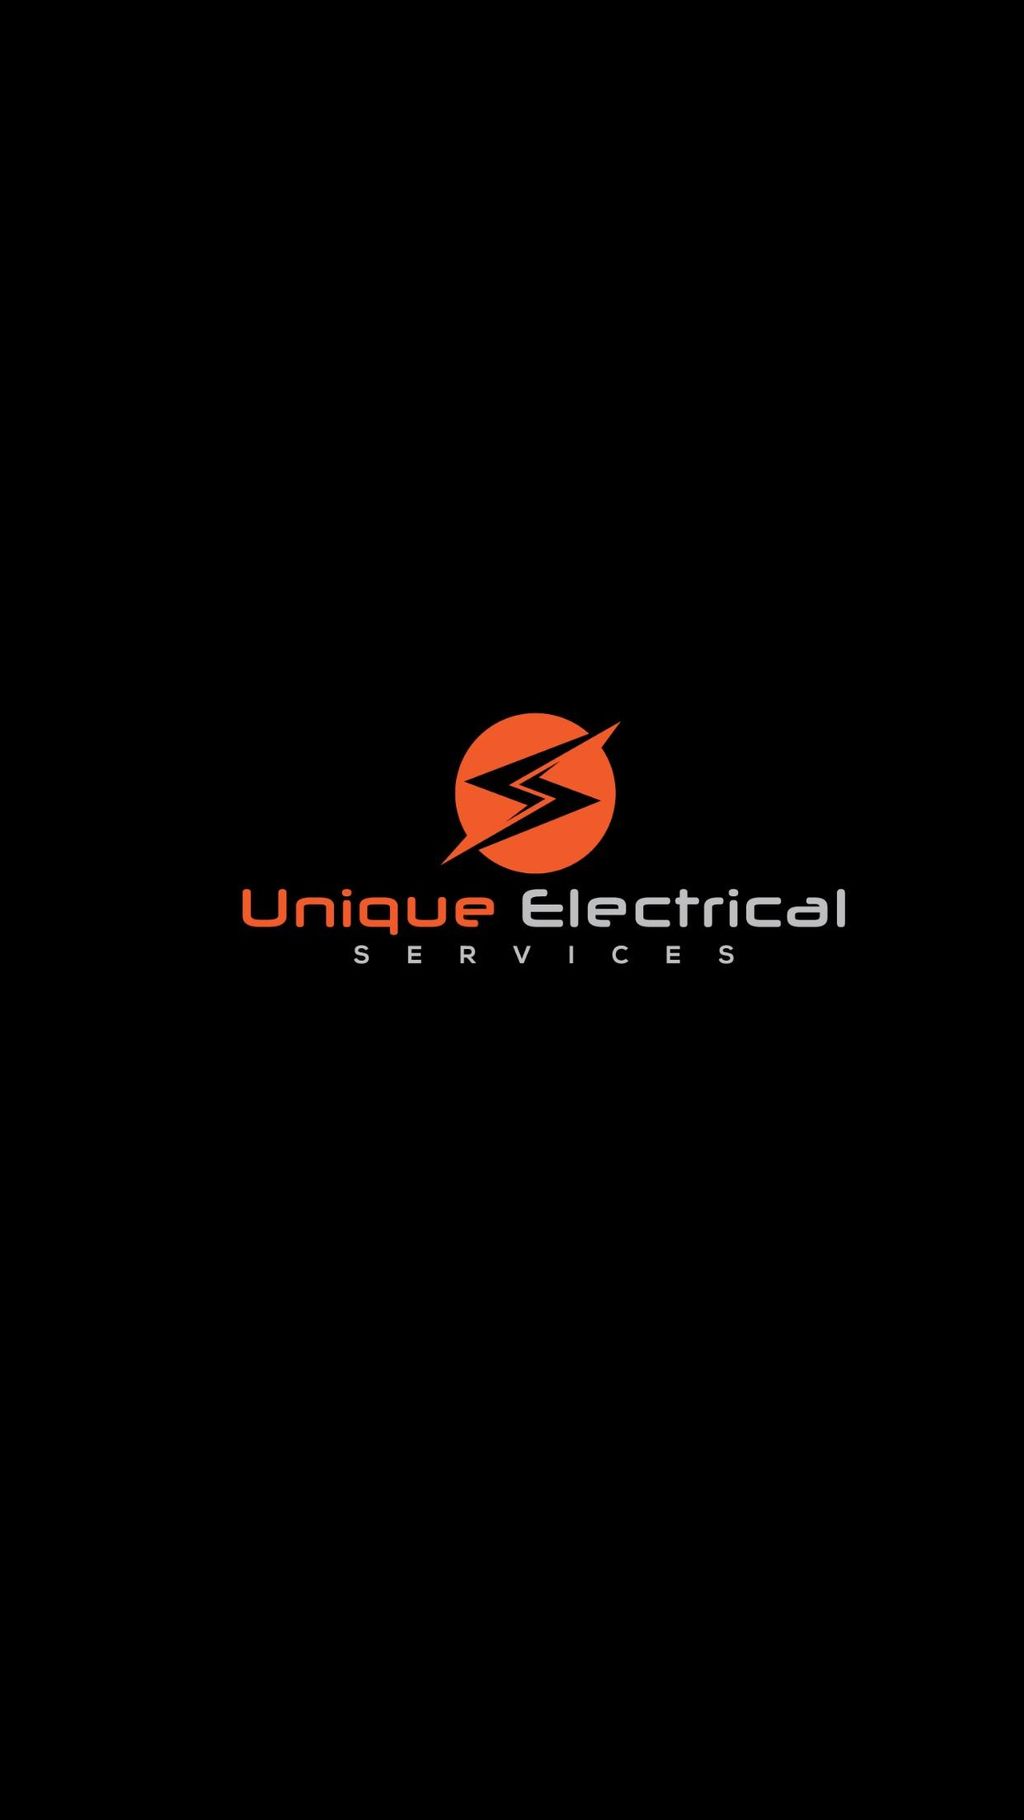 Unique Electrical Services